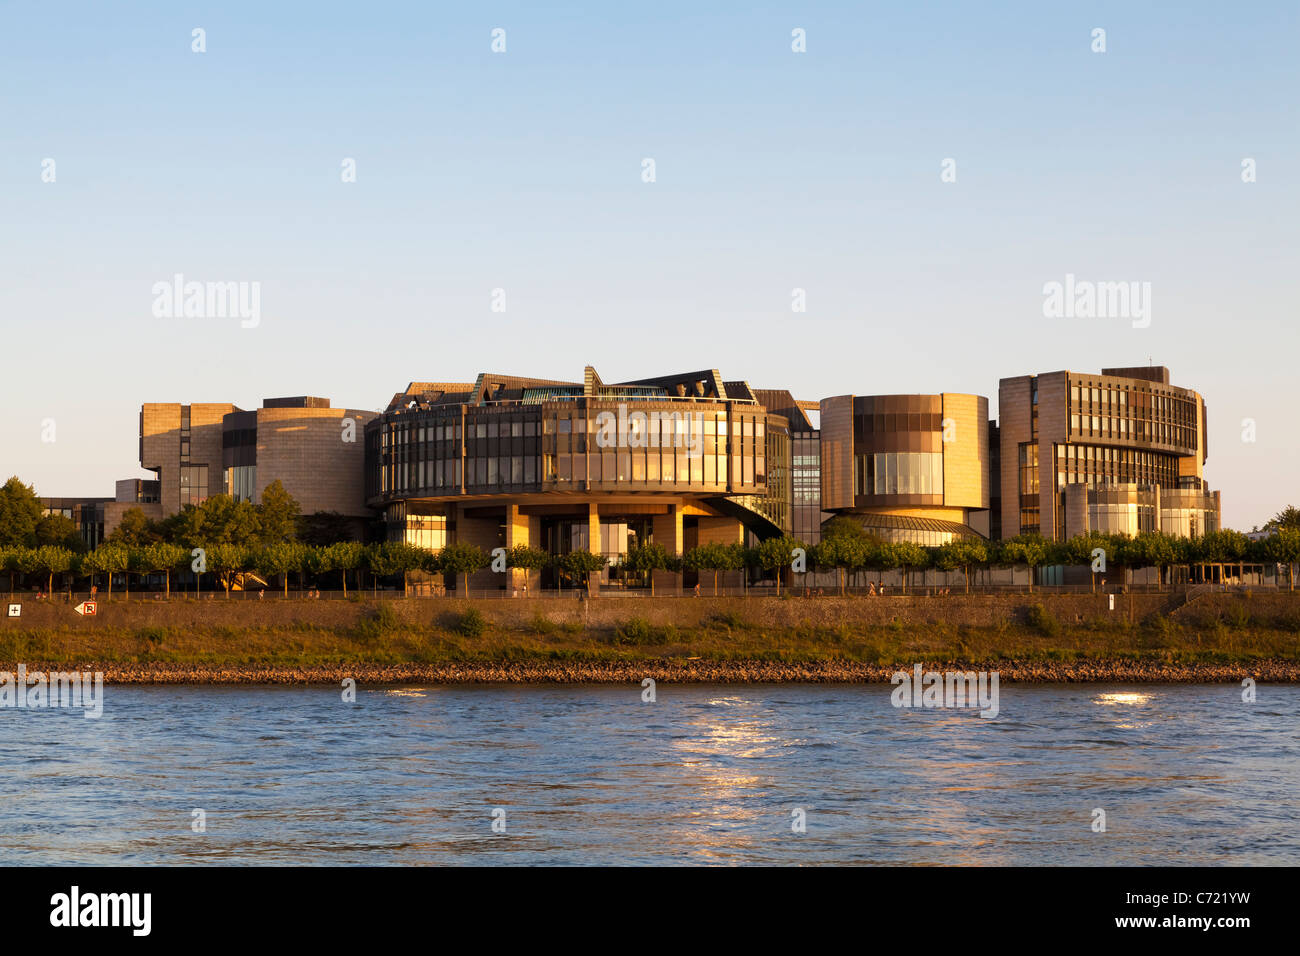 The Landtag of North Rhine-Westphalia in Dusseldorf, Germany Stock Photo